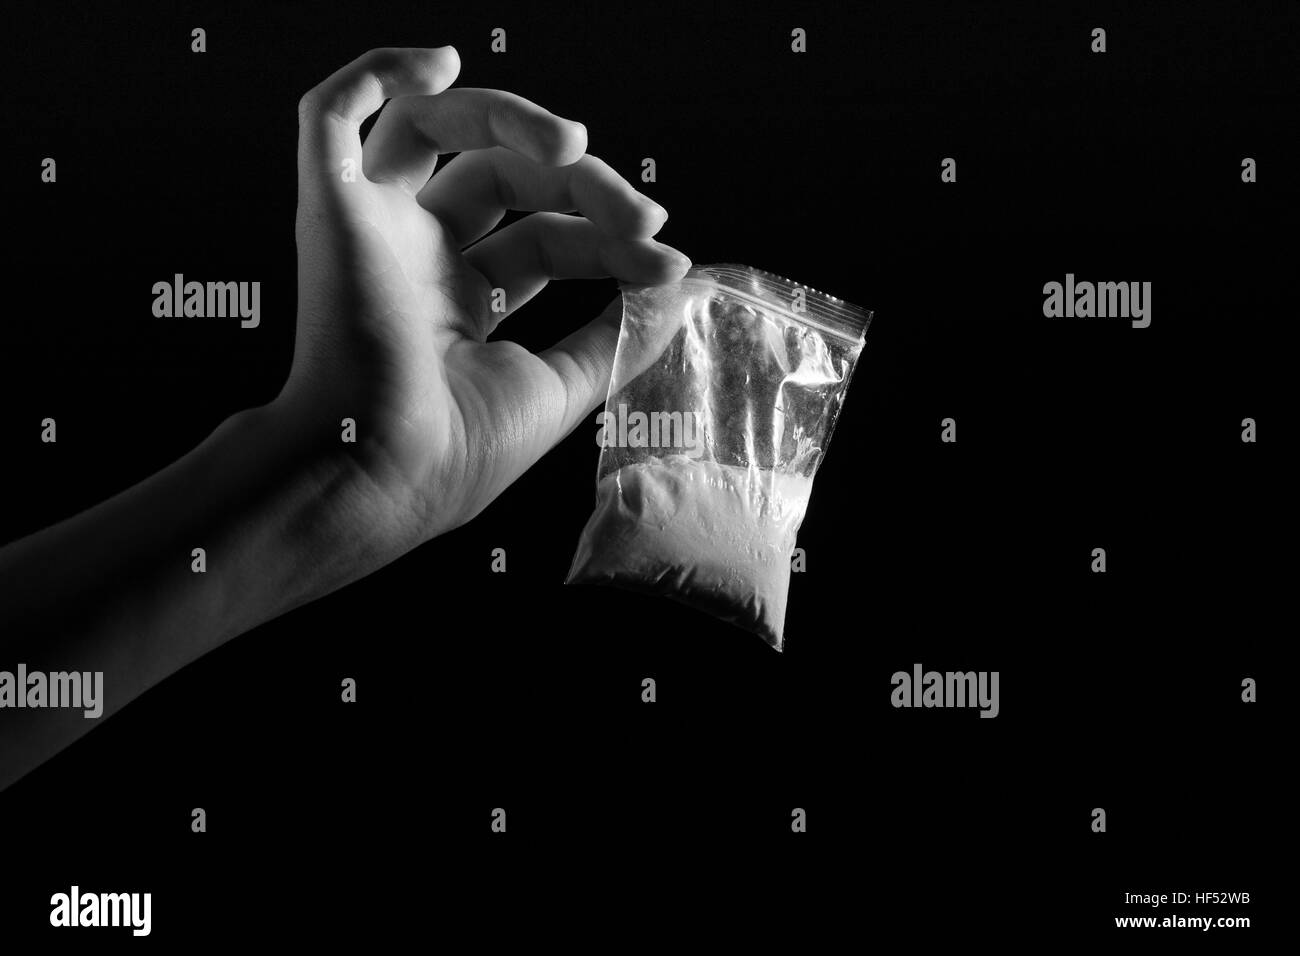 Paquet avec les stupéfiants dans la main blanche sur fond noir, l'image monochrome Banque D'Images